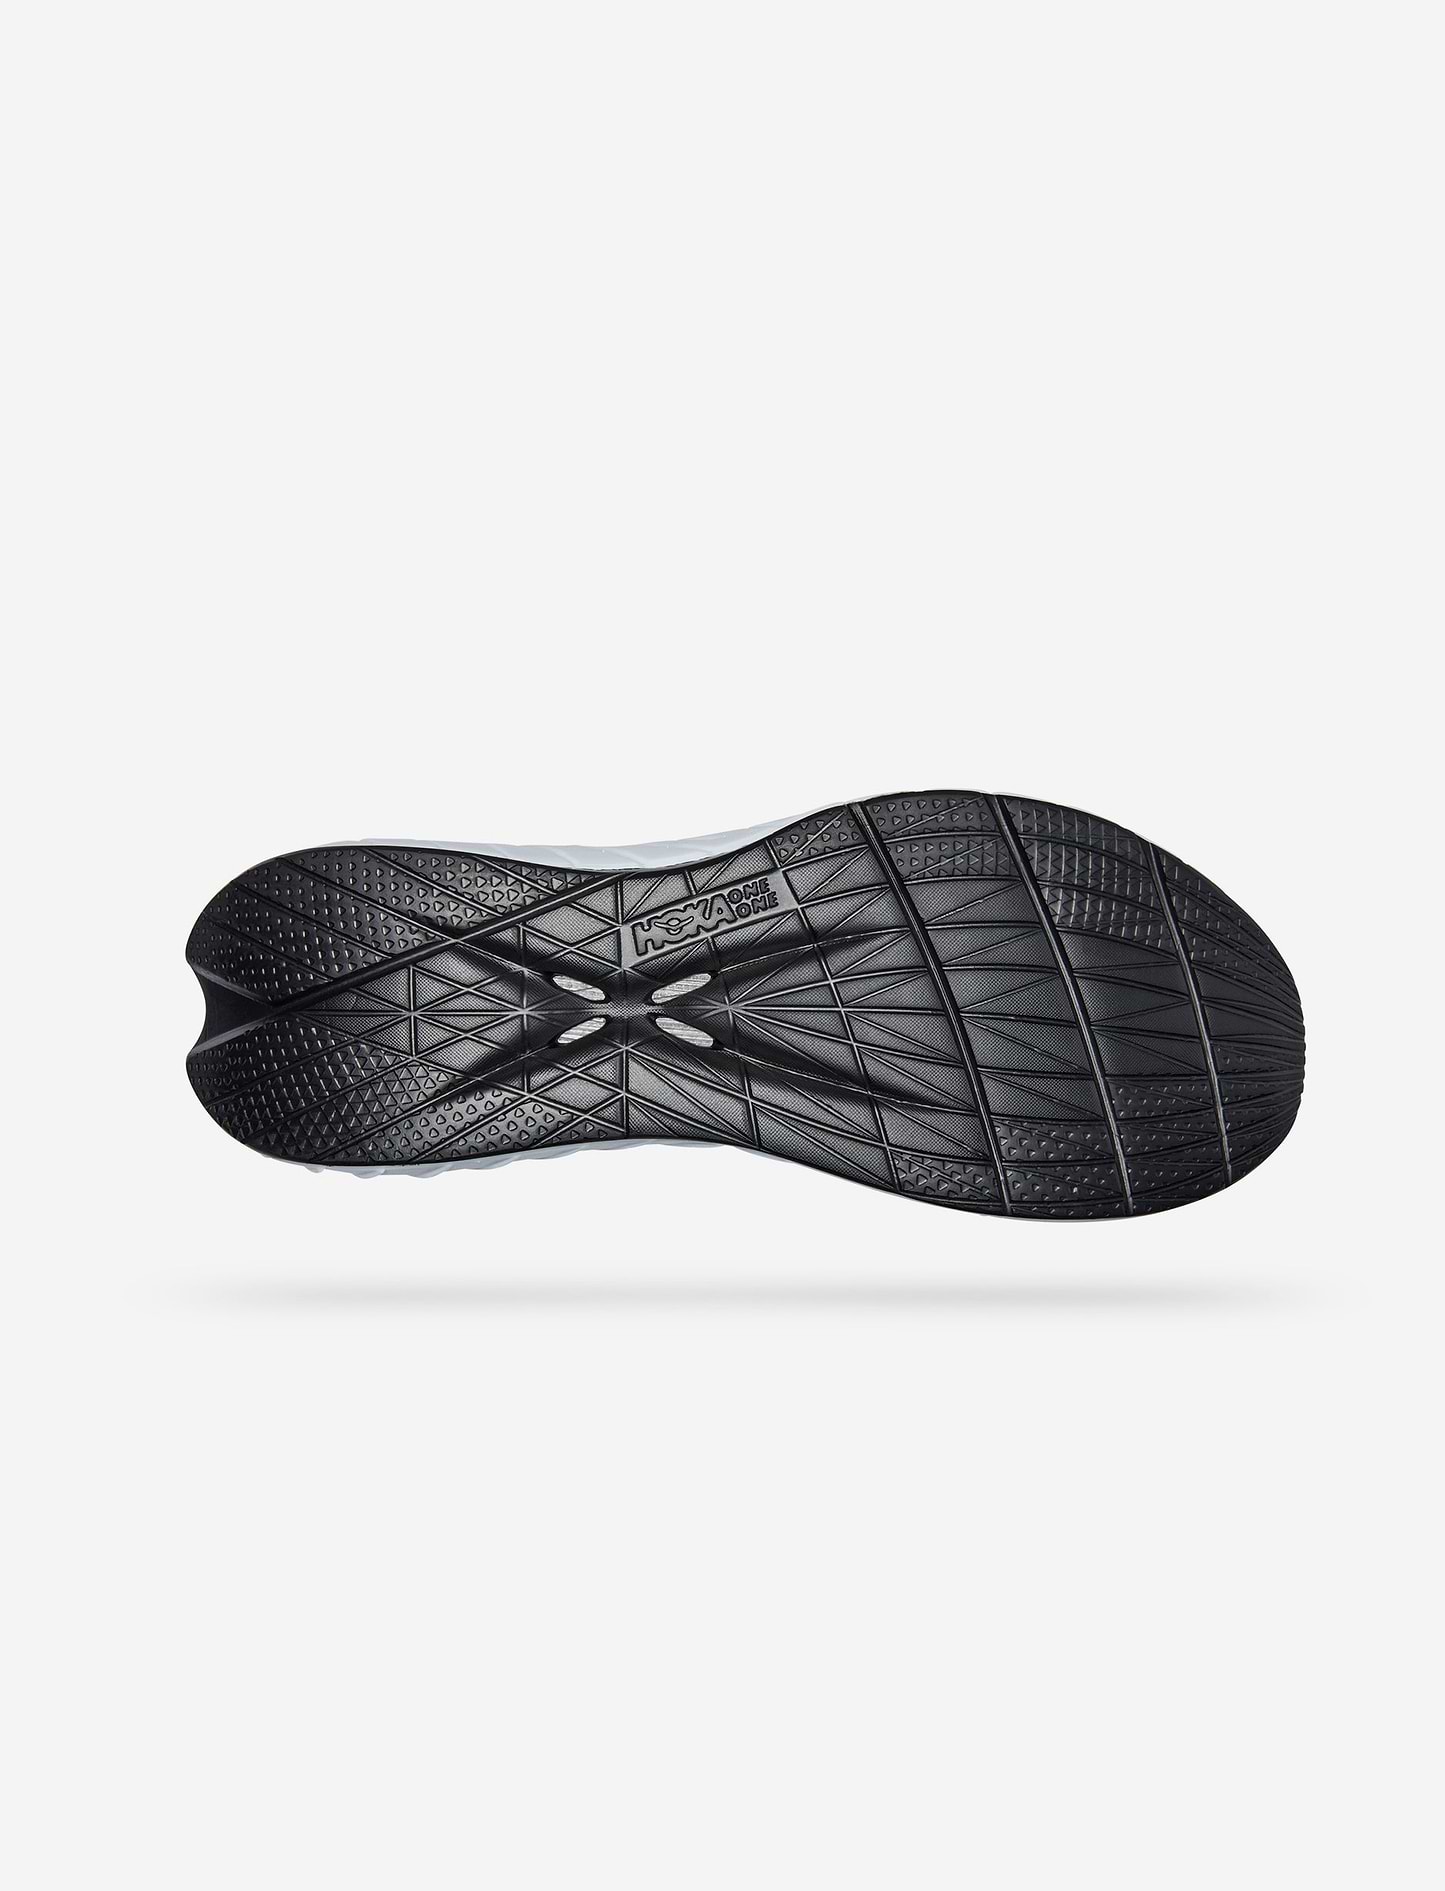 Hoka Carbon X3 - נעלי ספורט הוקה קרבון איקס 3 לגברים